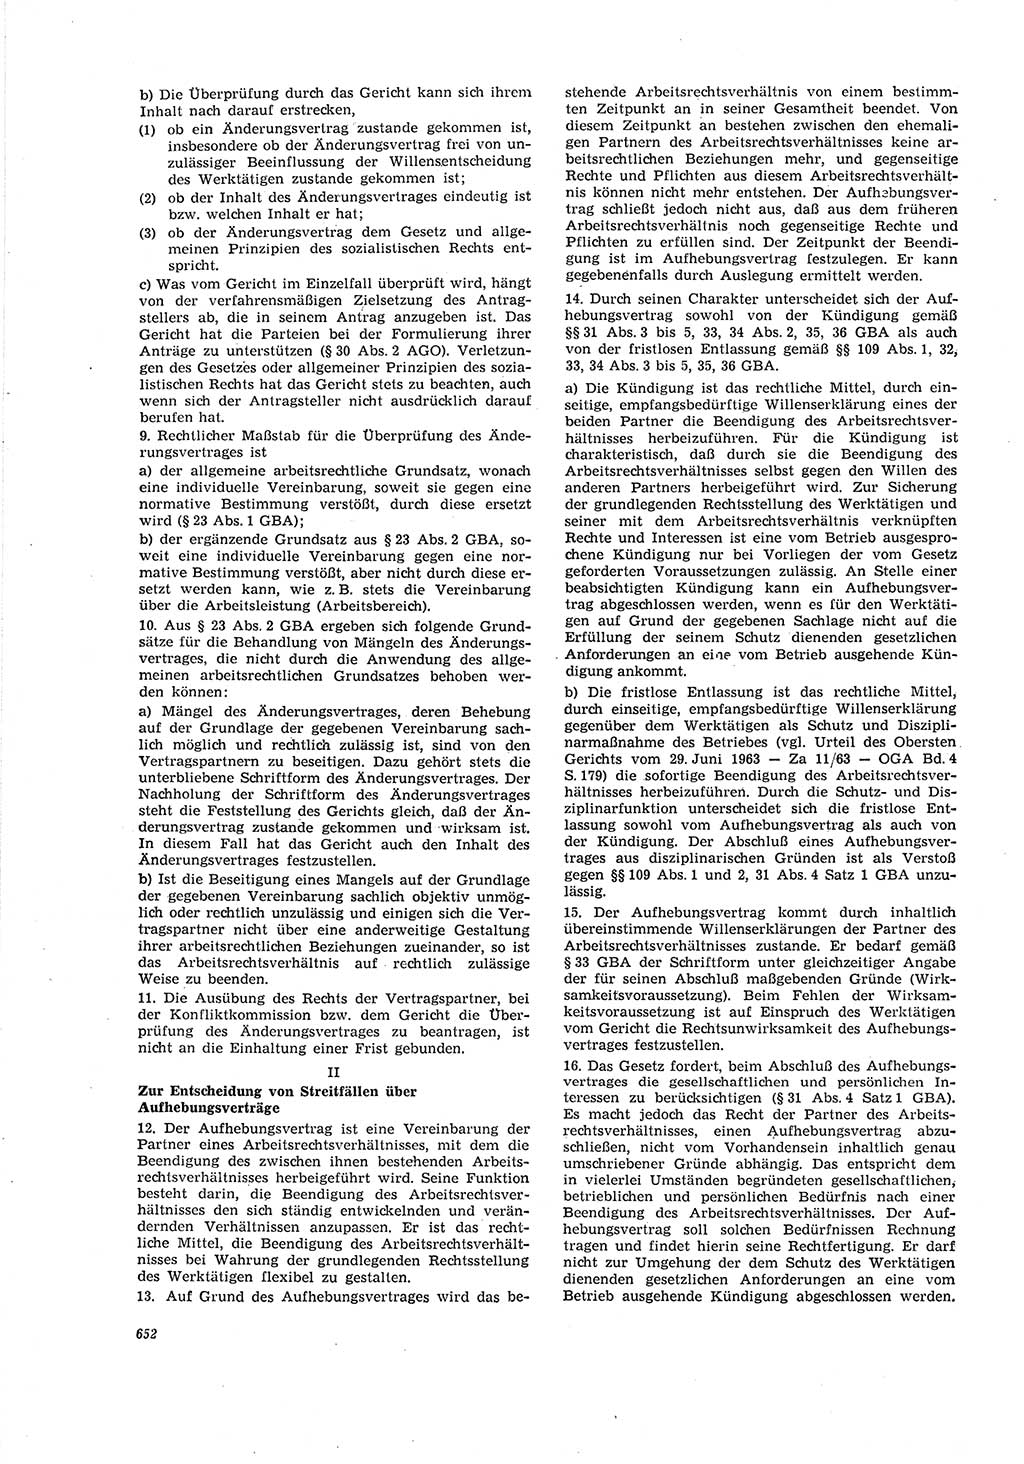 Neue Justiz (NJ), Zeitschrift für Recht und Rechtswissenschaft [Deutsche Demokratische Republik (DDR)], 20. Jahrgang 1966, Seite 652 (NJ DDR 1966, S. 652)